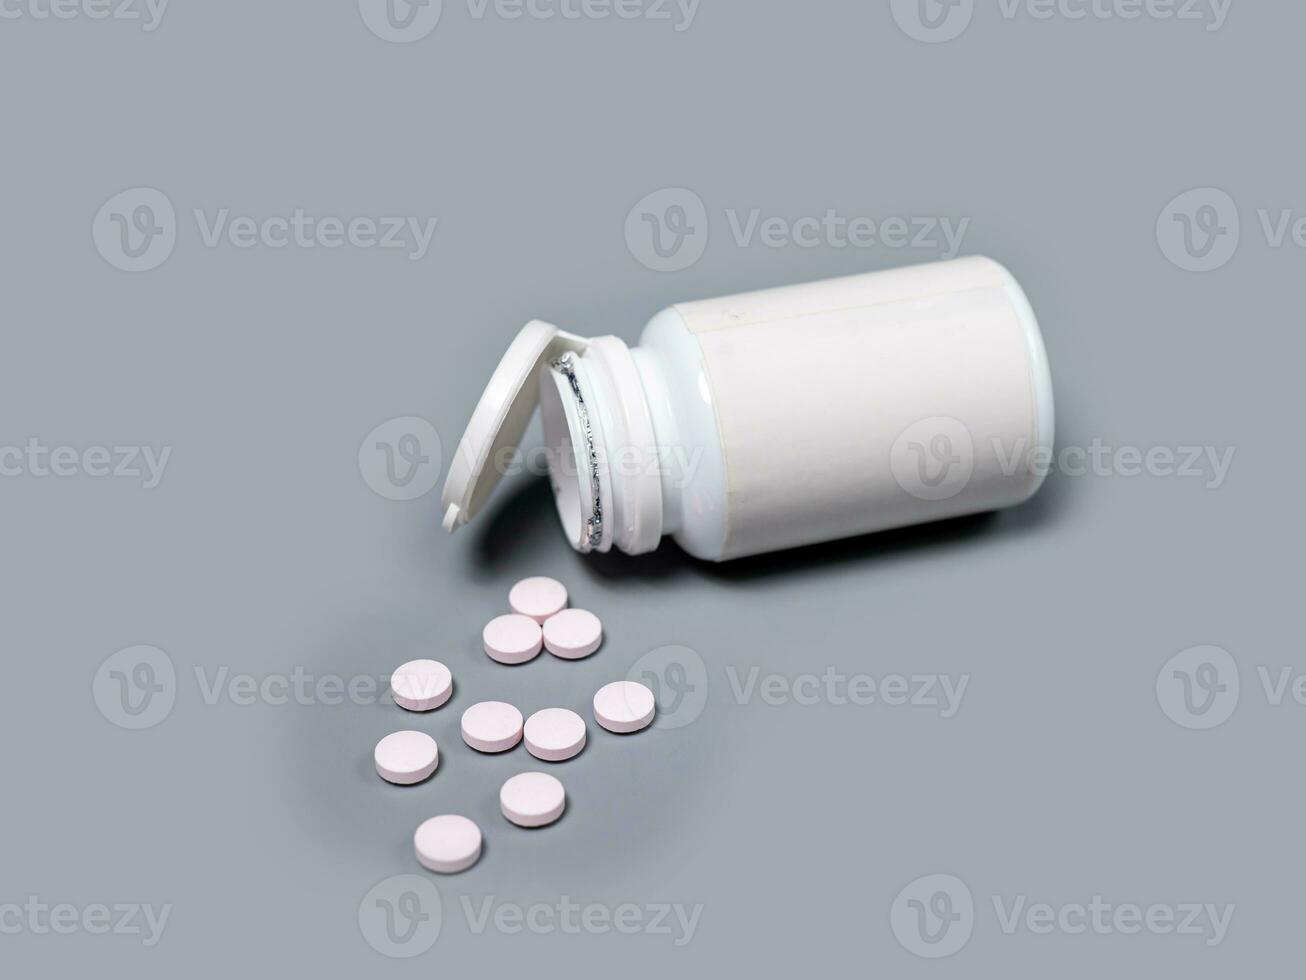 pillen morsen uit van pil fles wit pillen geneesmiddelen en voorschrift pillen vlak leggen achtergrond. wit medisch pillen en tablets morsen uit van een drug fles.kopie ruimte voor tekst foto